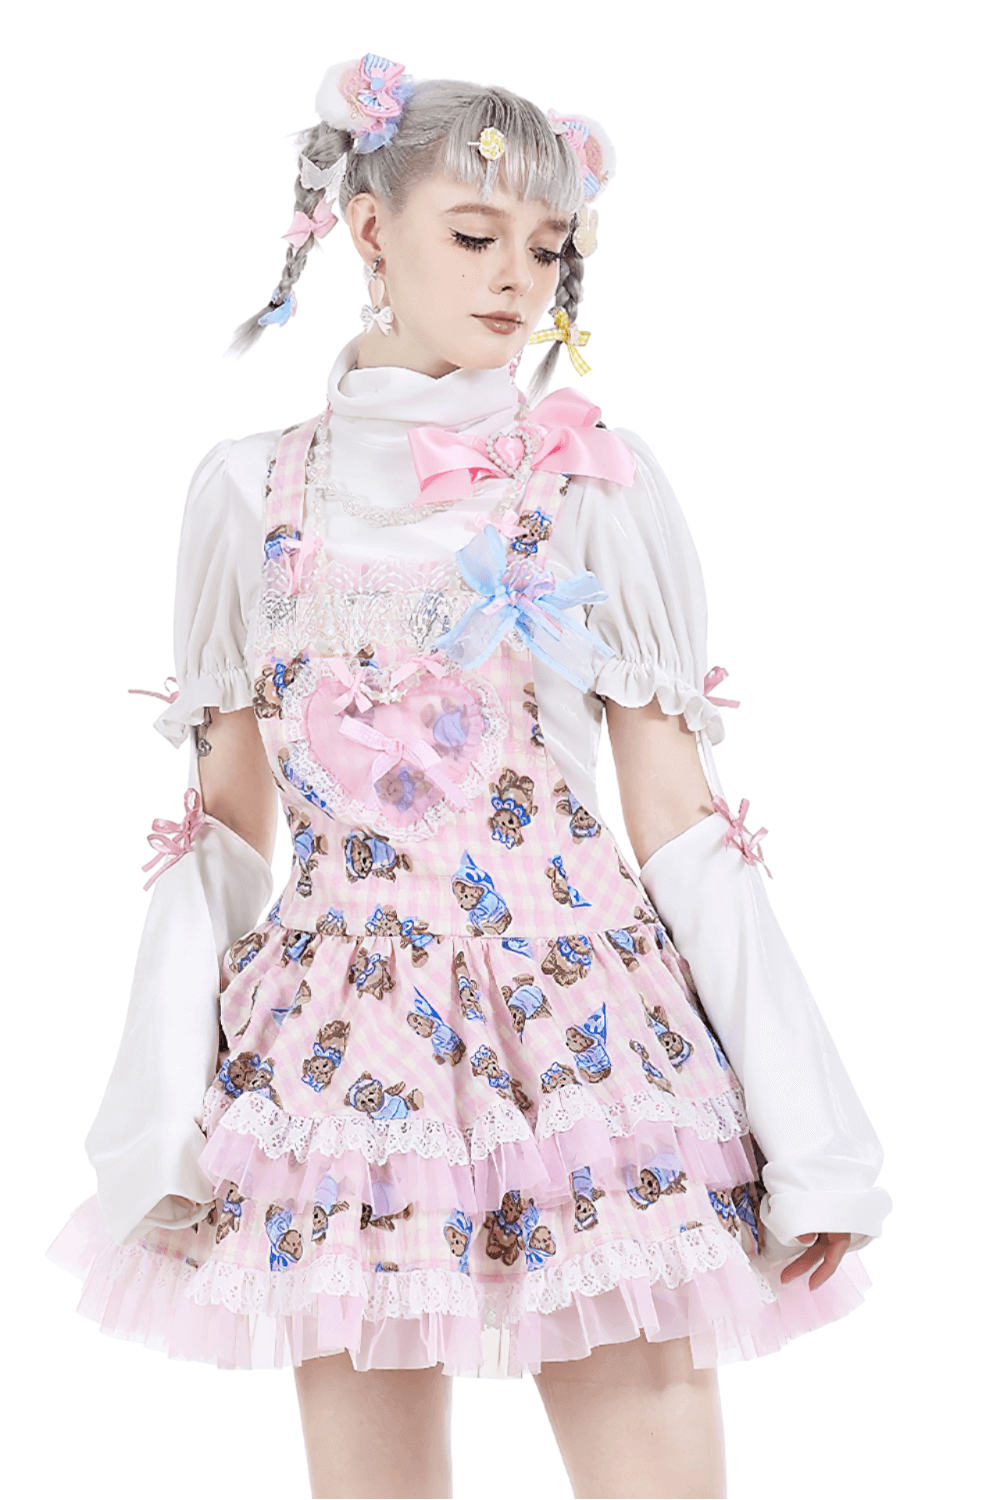 Sweet Lolita Fashion: Kawaii Dresses & Accessories